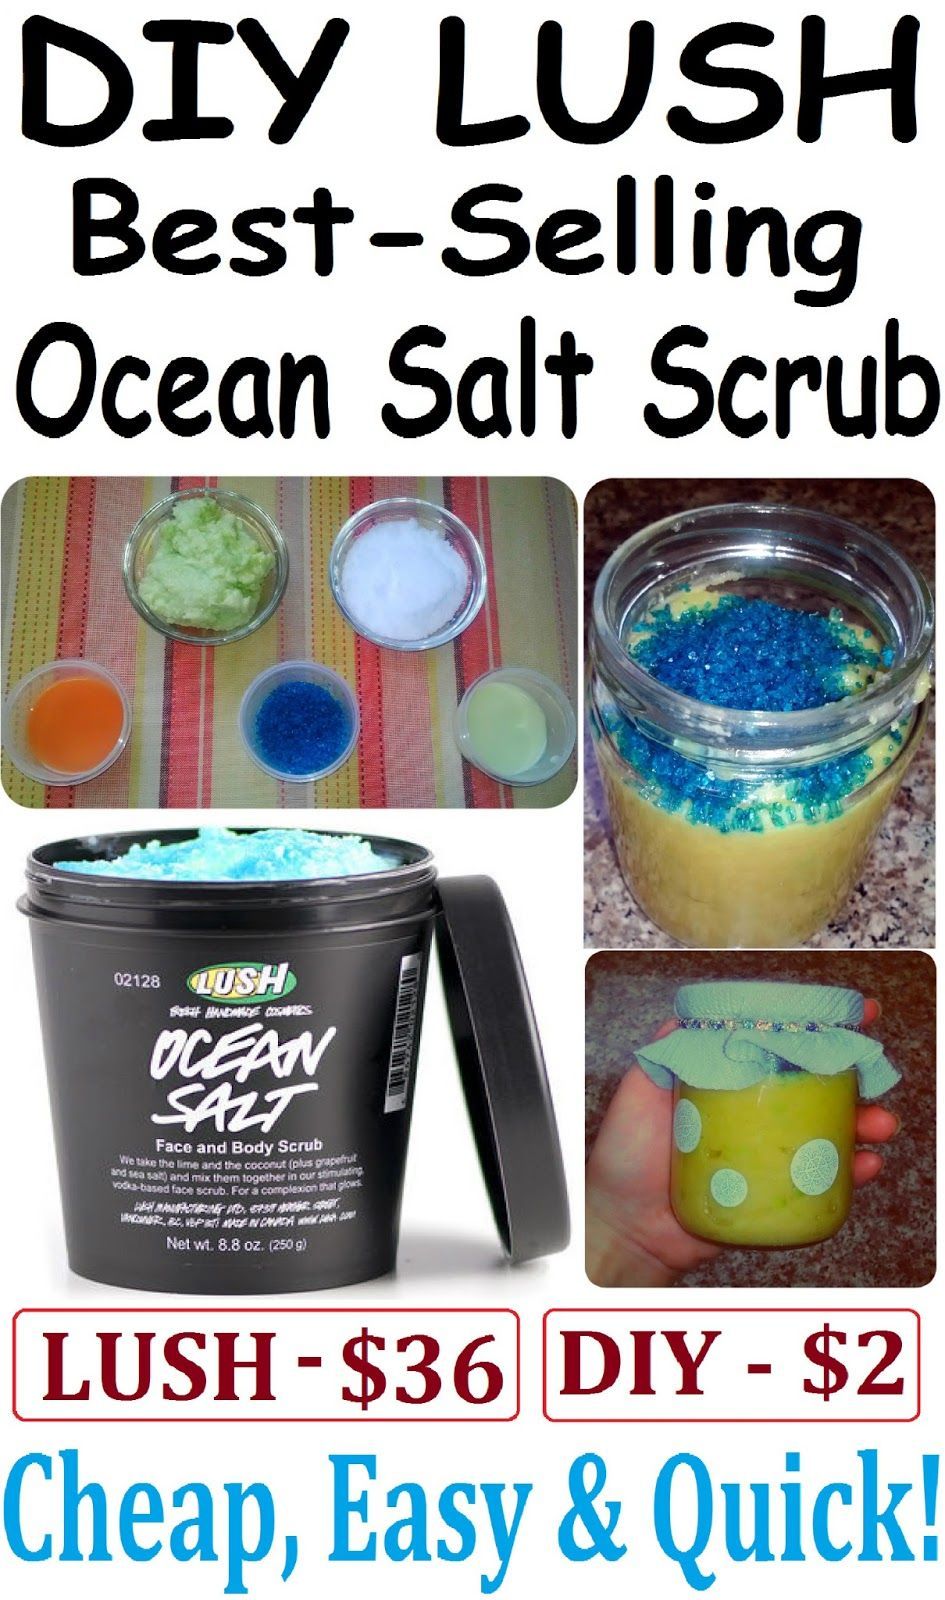 DIY LUSH Ocean Salt Scrub Recipe: 1/4 cup fine sea salt; 1 tbsp coarse sea salt;